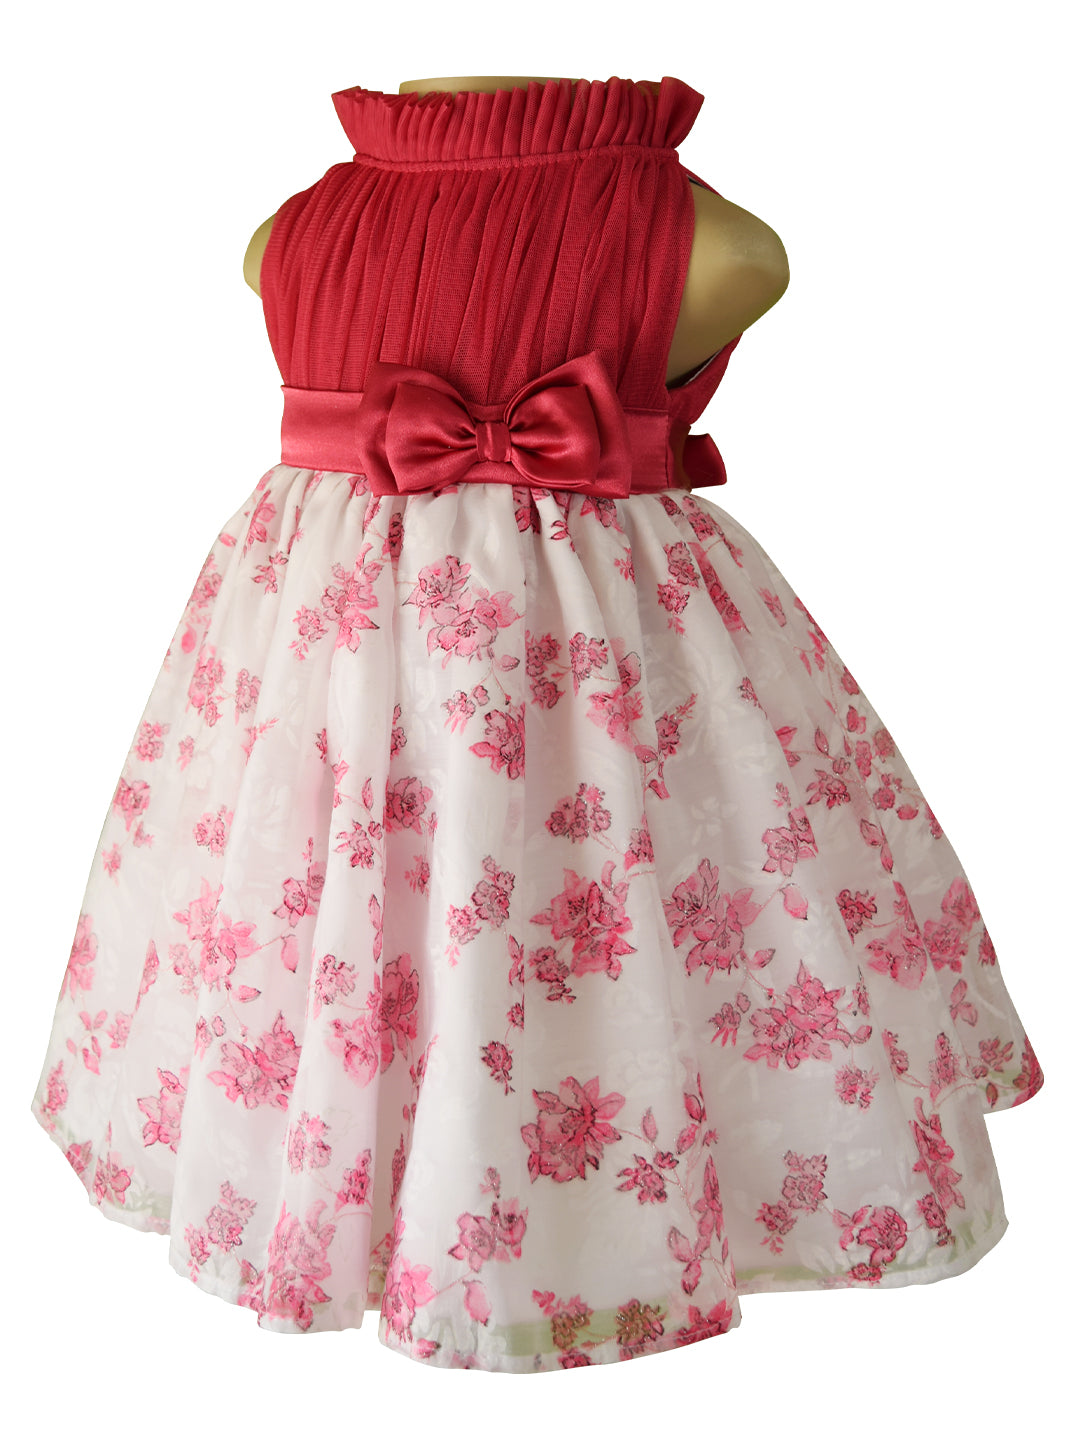 Faye Blush Floral Dress for kids